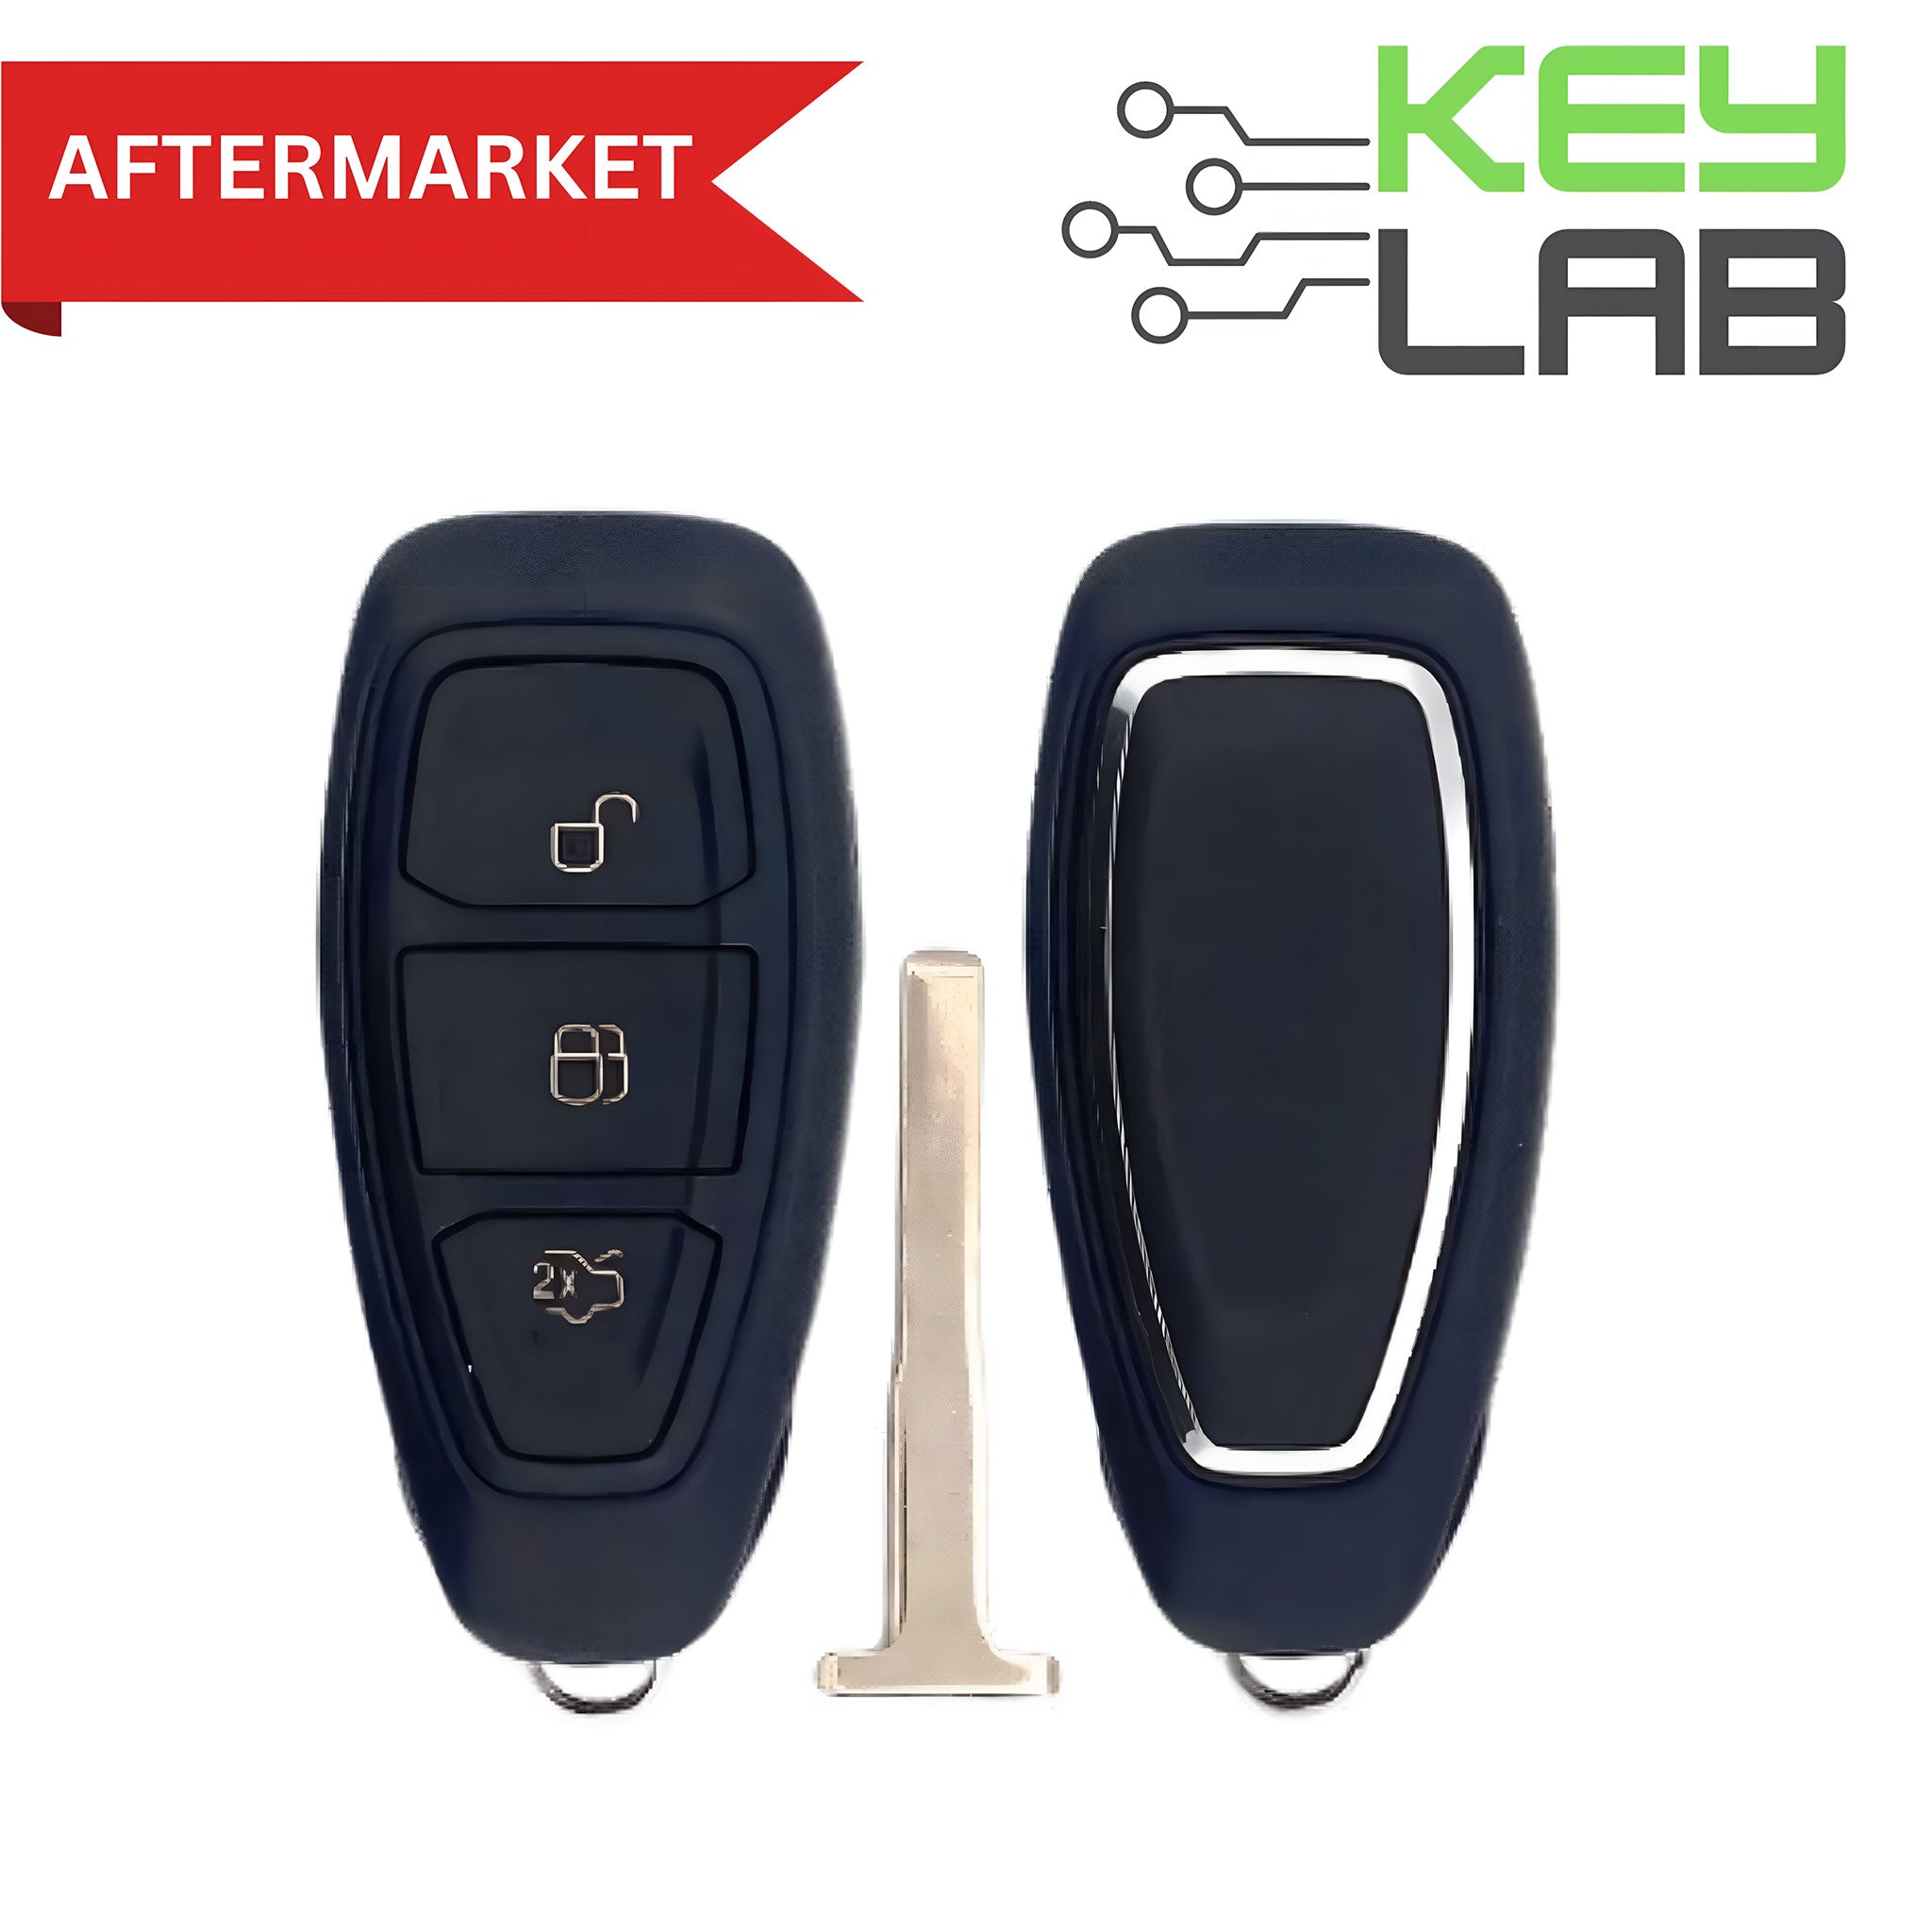 Ford Aftermarket 2015-2019 Focus (Manual Transmission Only) Smart Key 3B Trunk FCCID: KR5876268 PN# 5929029, 164-R8147 - Royal Key Supply